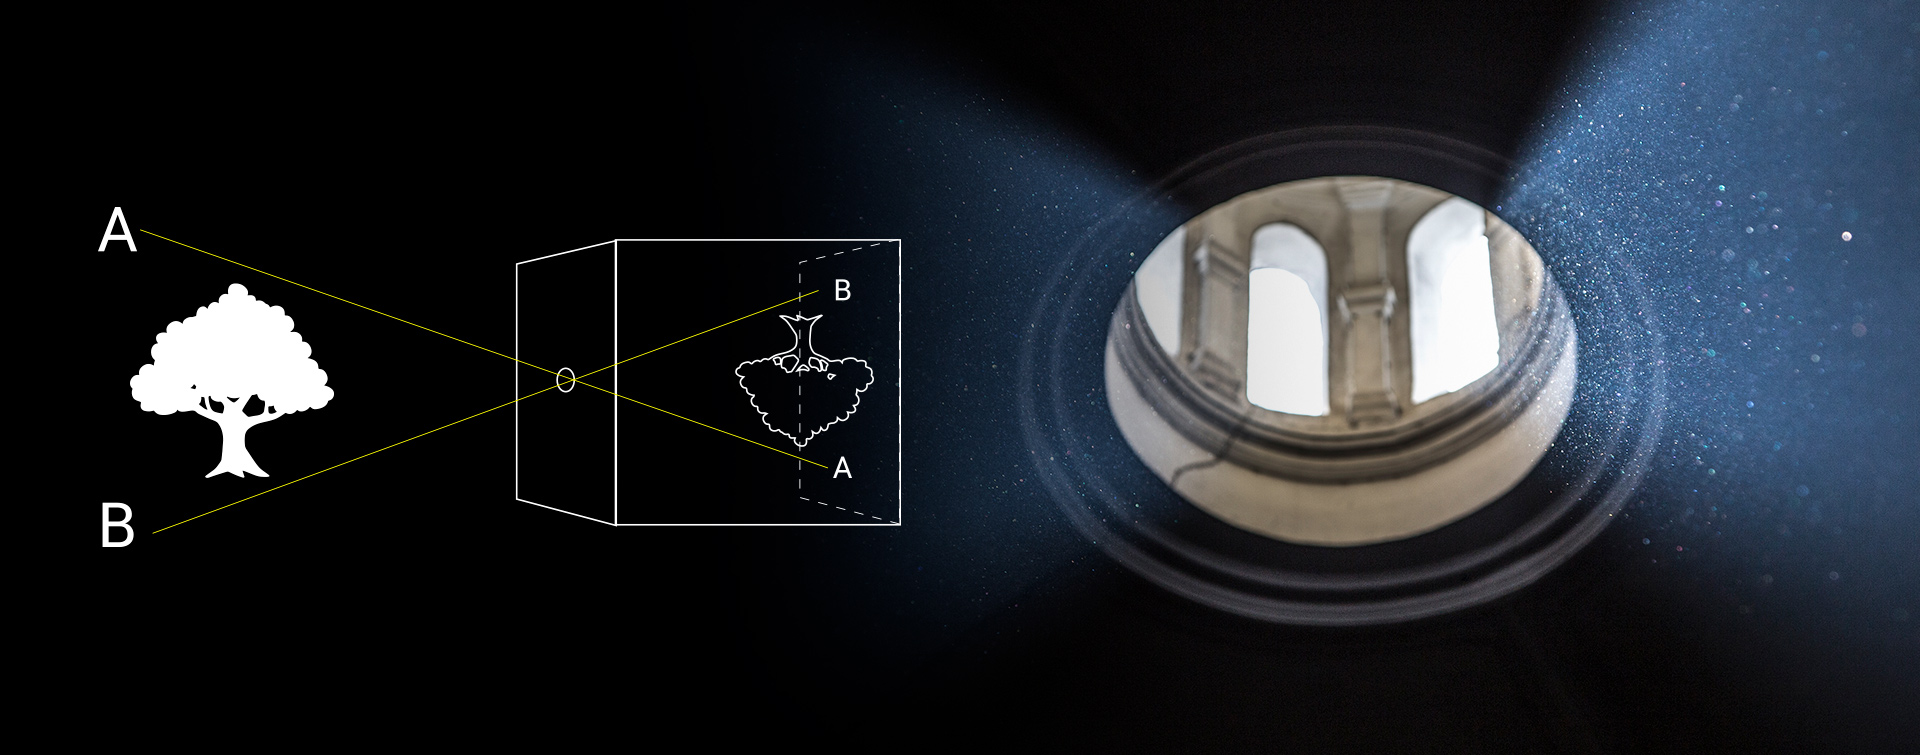 diagrama que muestra el funcionamiento de la cámara oscura, la luz atraviesa un agujero y el exterior se proyecta de forma invertida en la pared contraria.